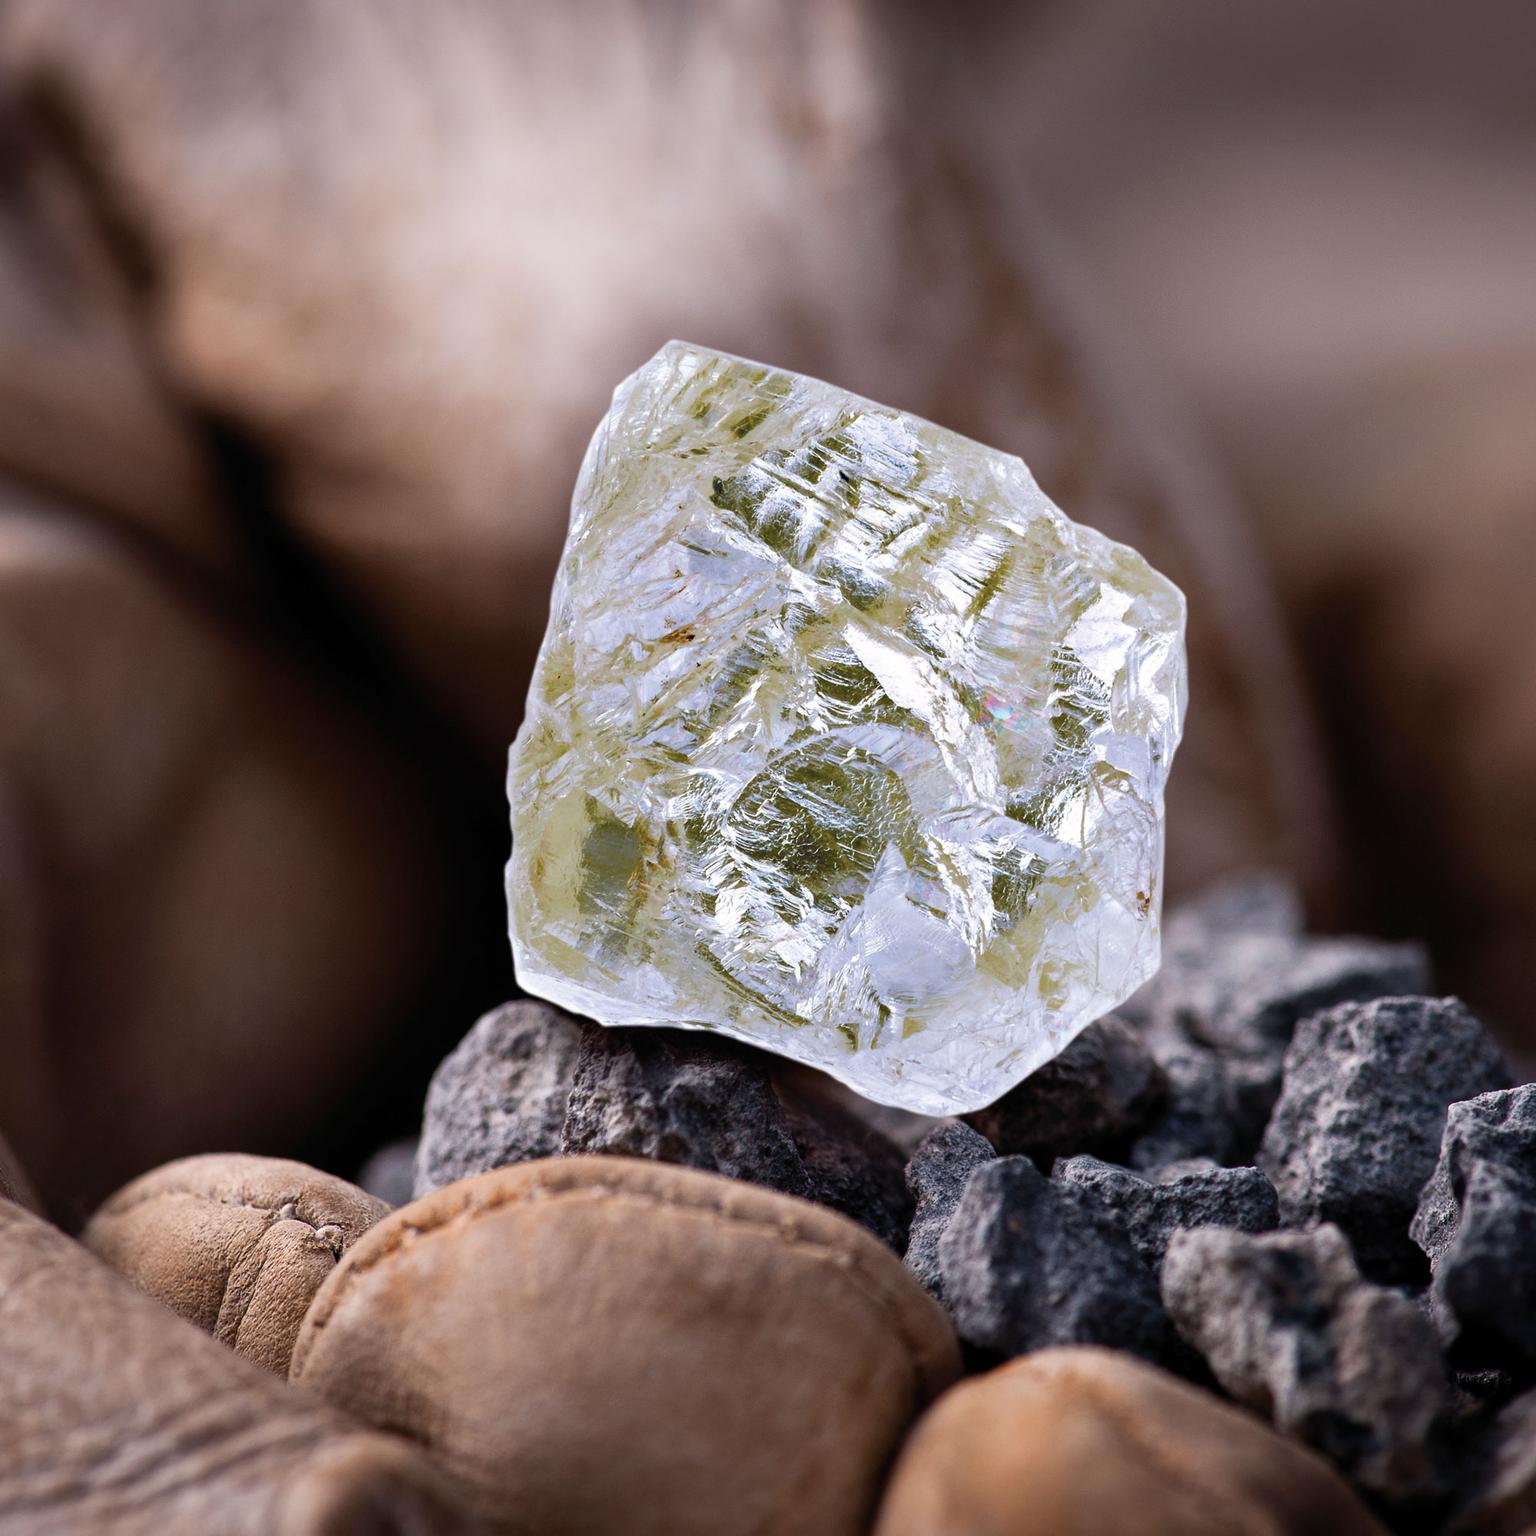 The 187.7 carat Diavik Foxfire diamond